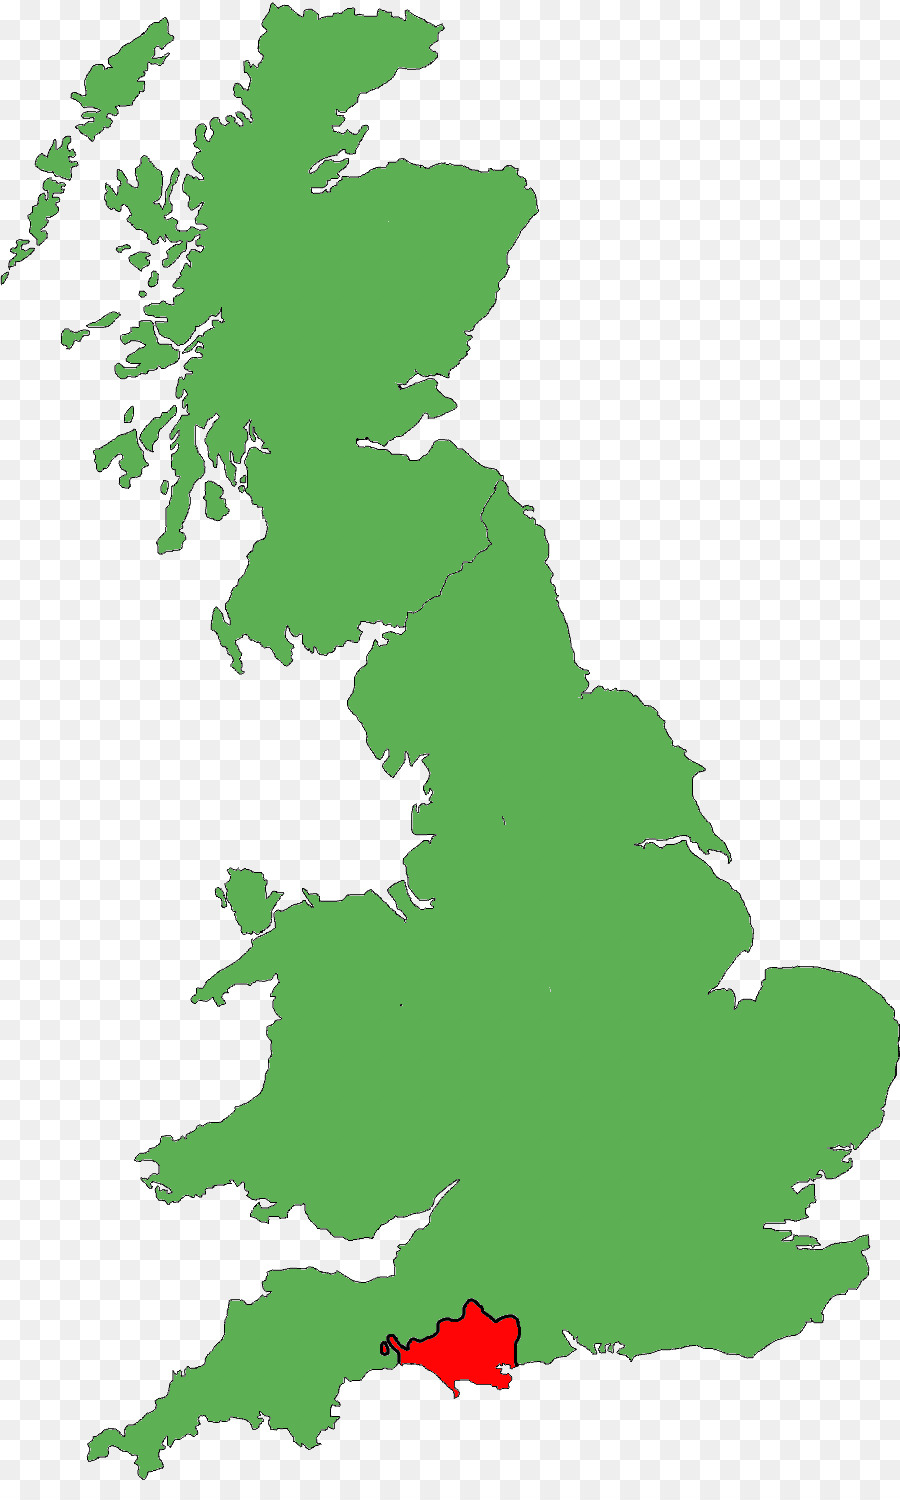 Uk territory. Англия на карте. Карта Великобритании. Территория Великобритании. Британские острова на карте.